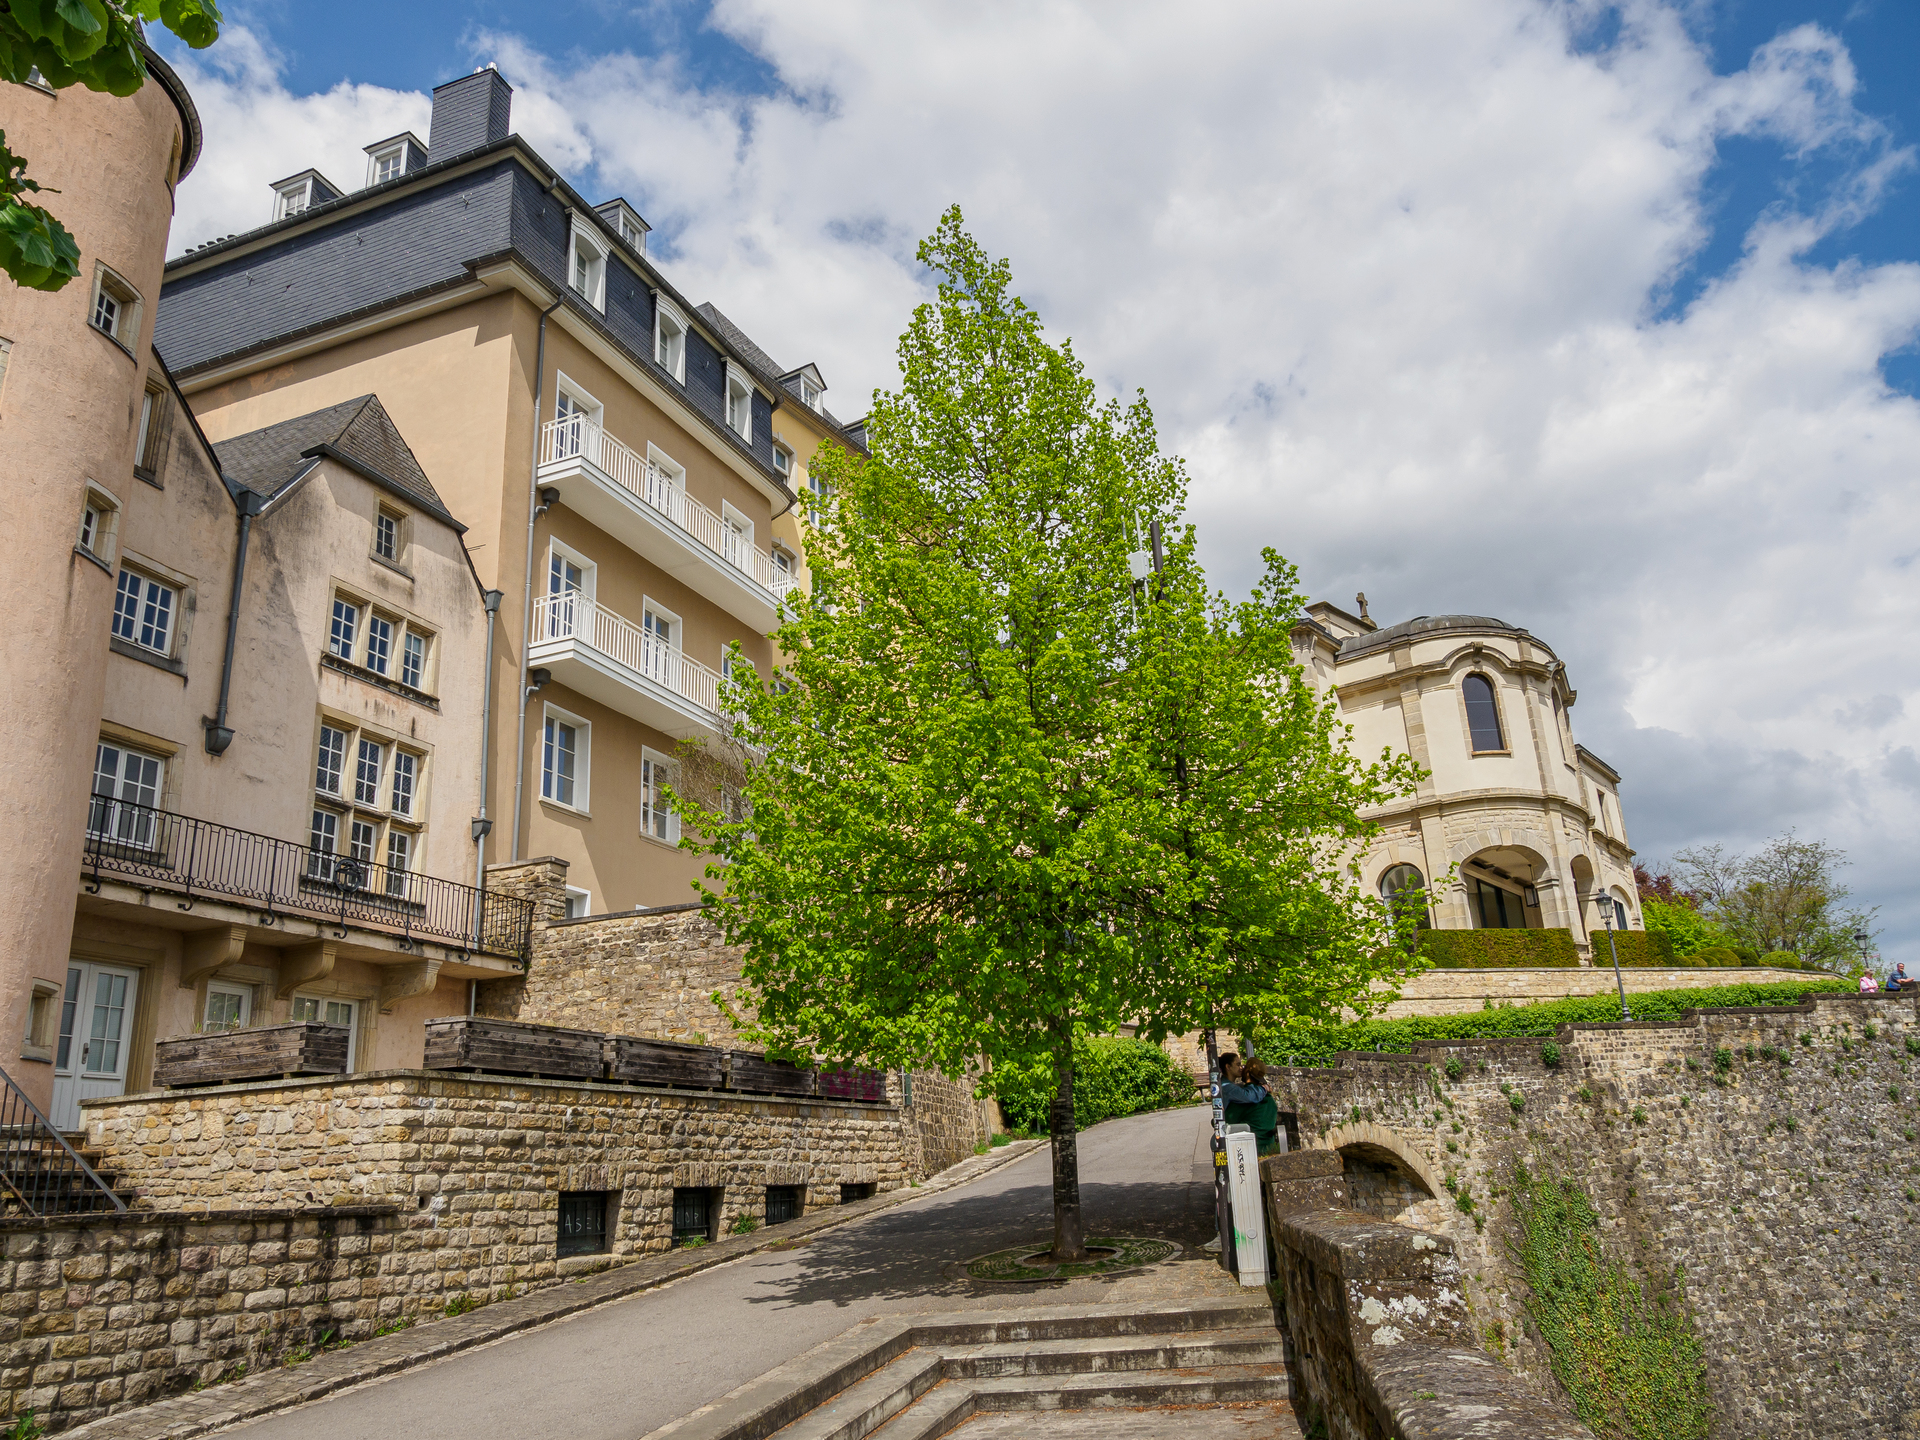 Na zdjęciu widać piękny budynek w Luksemburgu, który charakteryzuje się architekturą z epoki renesansu. Budynek ten posiada dekoracyjne elementy, takie jak kolumny, zdobione gzymsy i reliefy, które nadają mu elegancki wygląd. Zdjęcie to oddaje charakterystyczny styl architektoniczny Luksemburga, który łączy w sobie elementy różnych epok, tworząc unikalny styl i atmosferę. Zdjęcie to może być wykorzystane w artykułach o architekturze Luksemburga lub na stronach turystycznych, aby zainspirować czytelników do odkrywania piękna i historii tego uroczego kraju